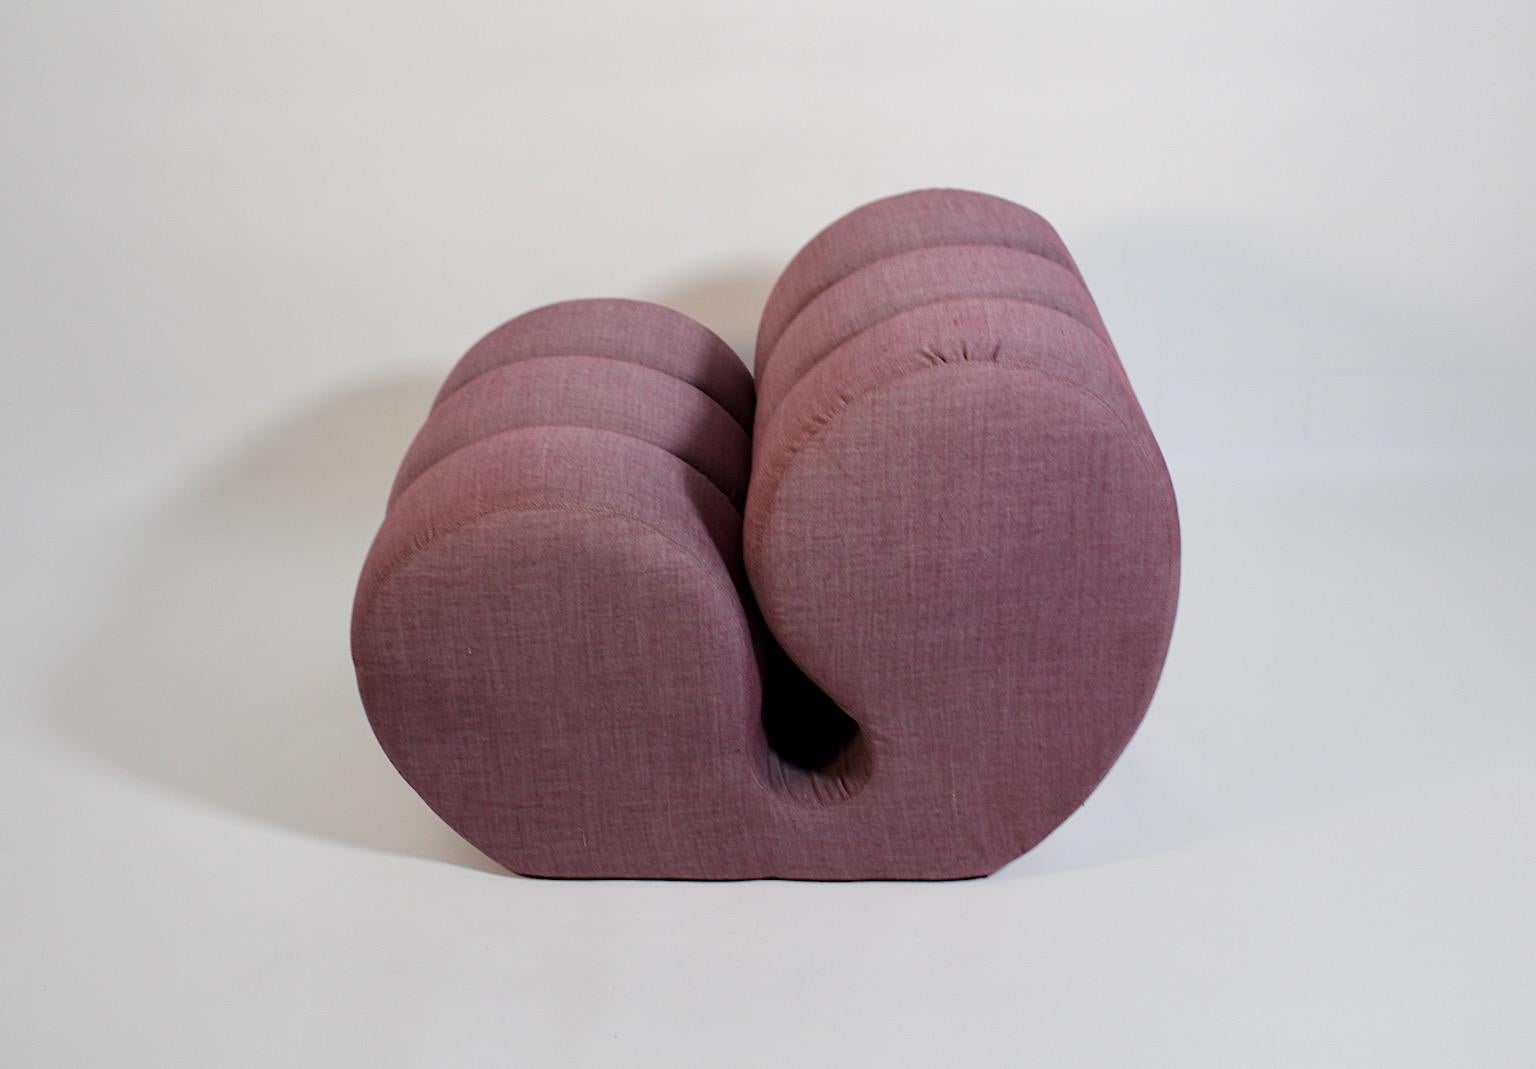 Skulpturaler Vintage-Sessel im Weltraumzeitalter, bezogen mit lavendelfarbenem Stoff.
Ein fantastischer, freistehender Loungesessel in geschwungener Form mit einer wunderbaren und bequemen Sitzfläche und Rückenlehne, die eine schöne Silhouette